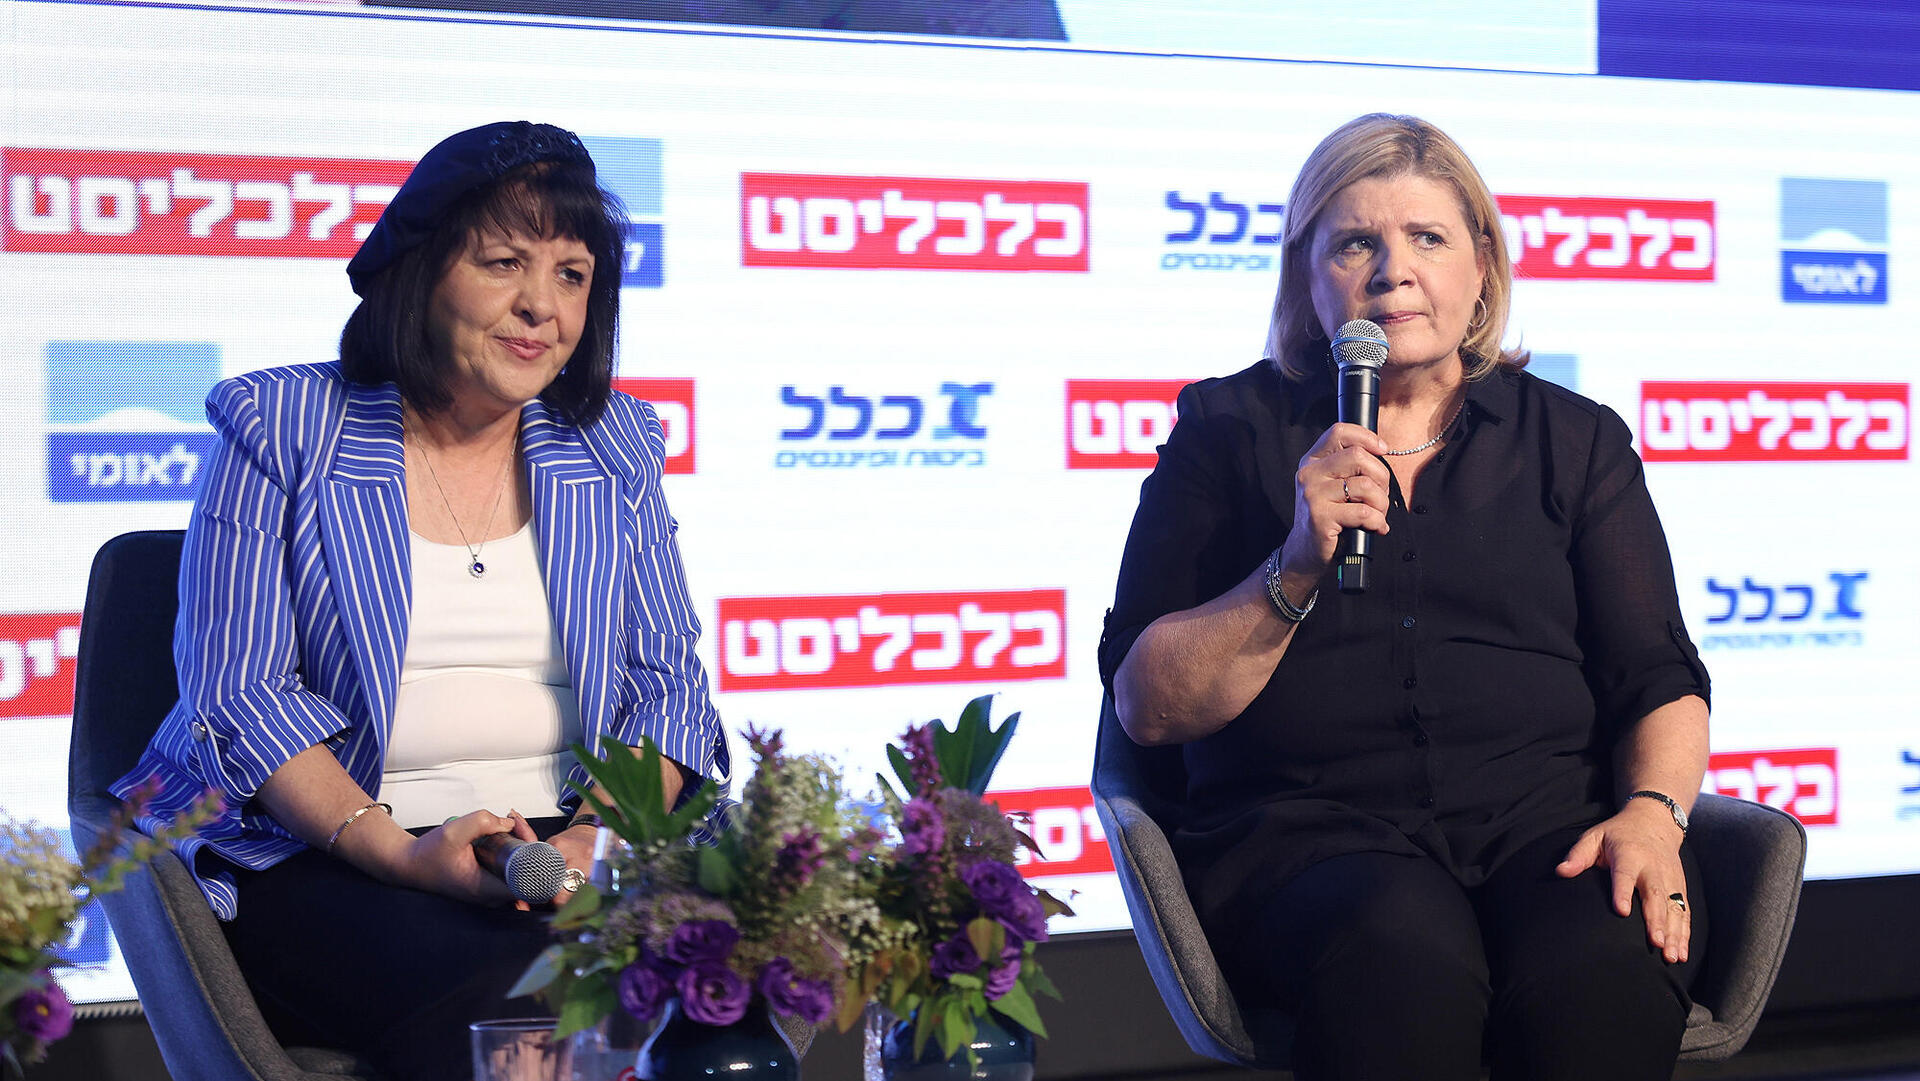 הוועידה הכלכלית לאומית - אורנה ברביבאי מועמדת לראשות עיריית תל אביב יפו ו עליזה בלוך ראשת העיר בית שמש